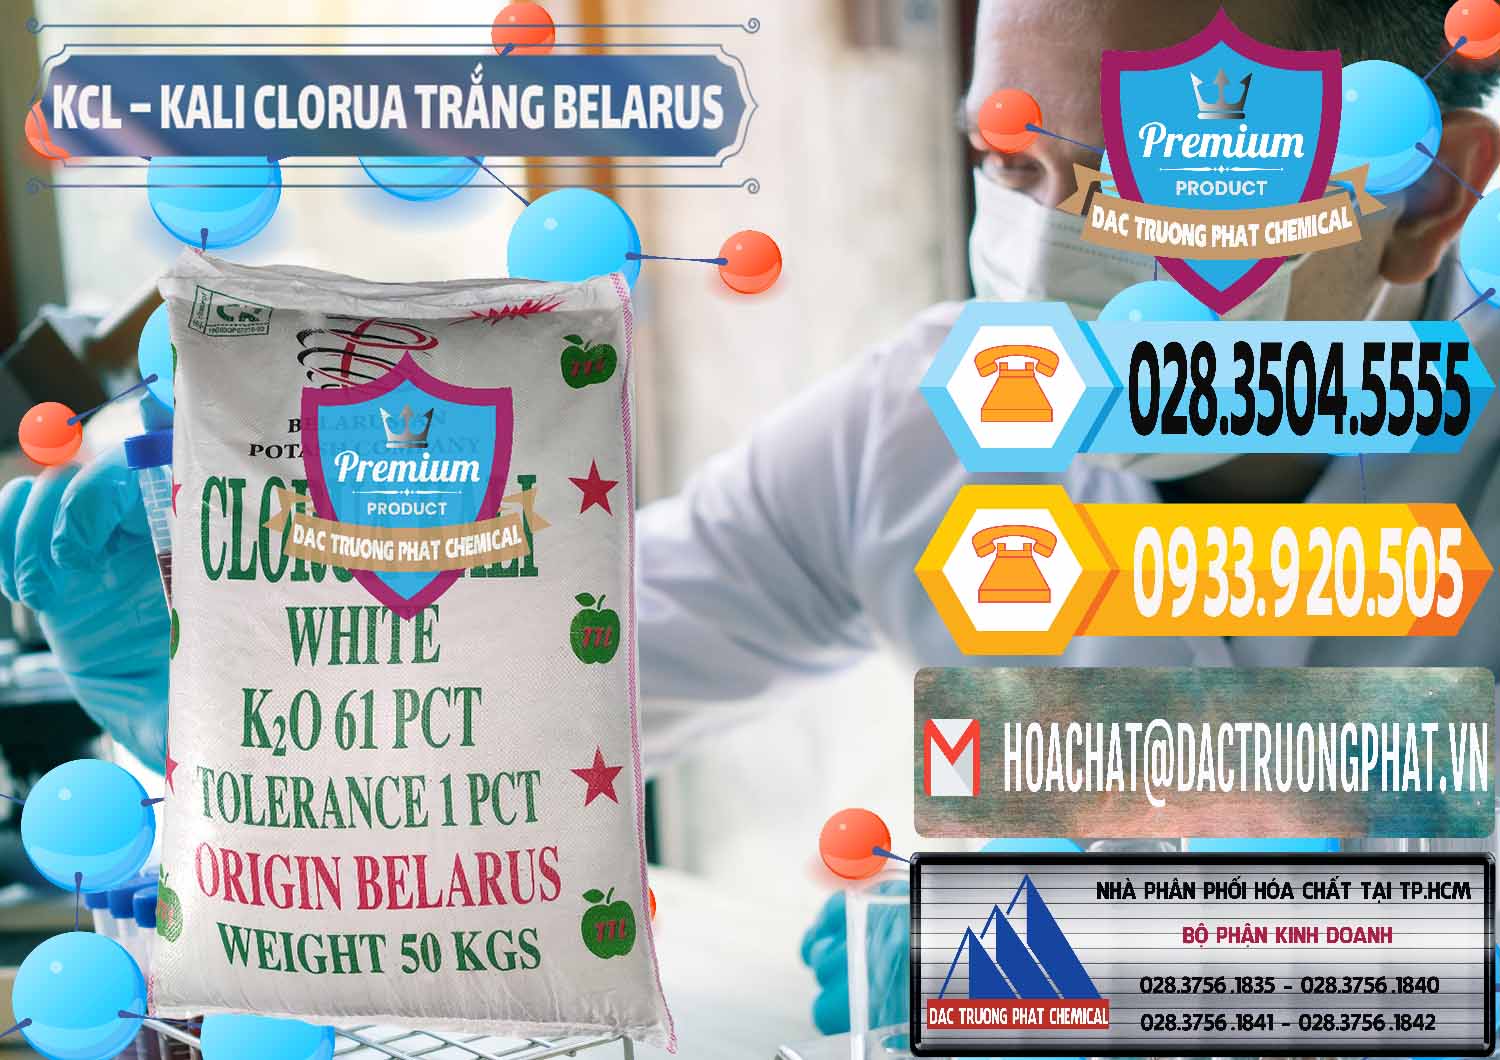 Nơi chuyên kinh doanh & bán KCL – Kali Clorua Trắng Belarus - 0085 - Cty chuyên cung cấp & bán hóa chất tại TP.HCM - hoachattayrua.net